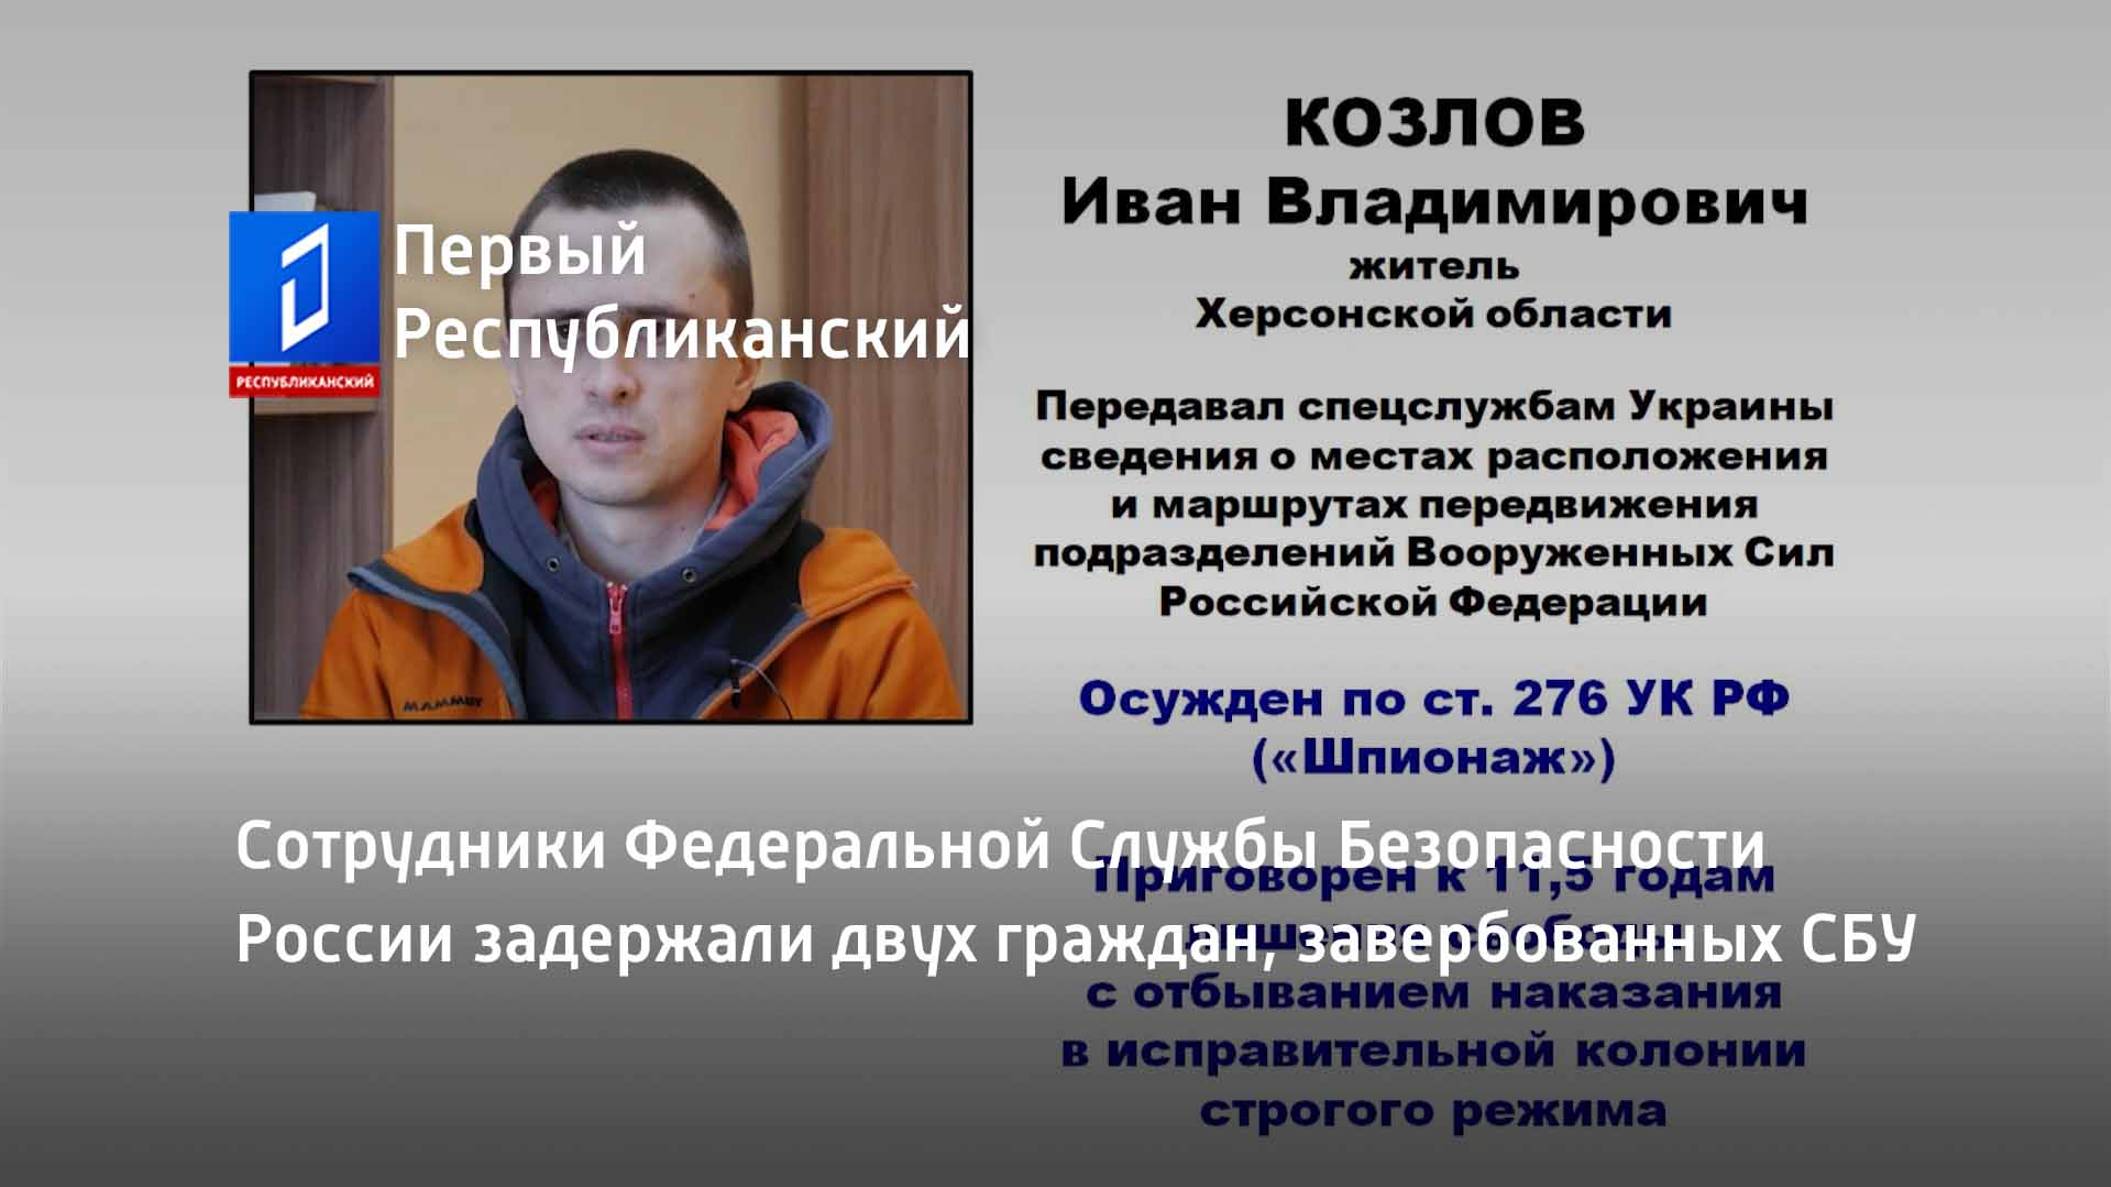 Сотрудники Федеральной Службы Безопасности России задержали двух граждан, завербованных СБУ